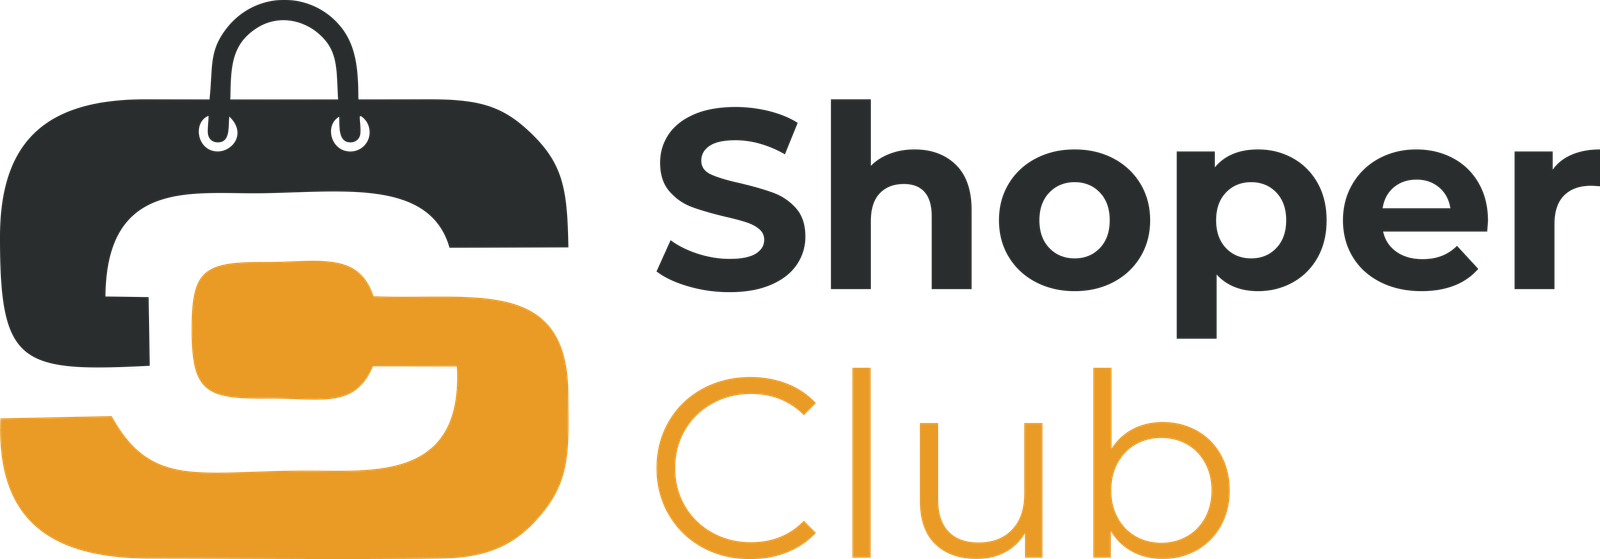 ShoperClub